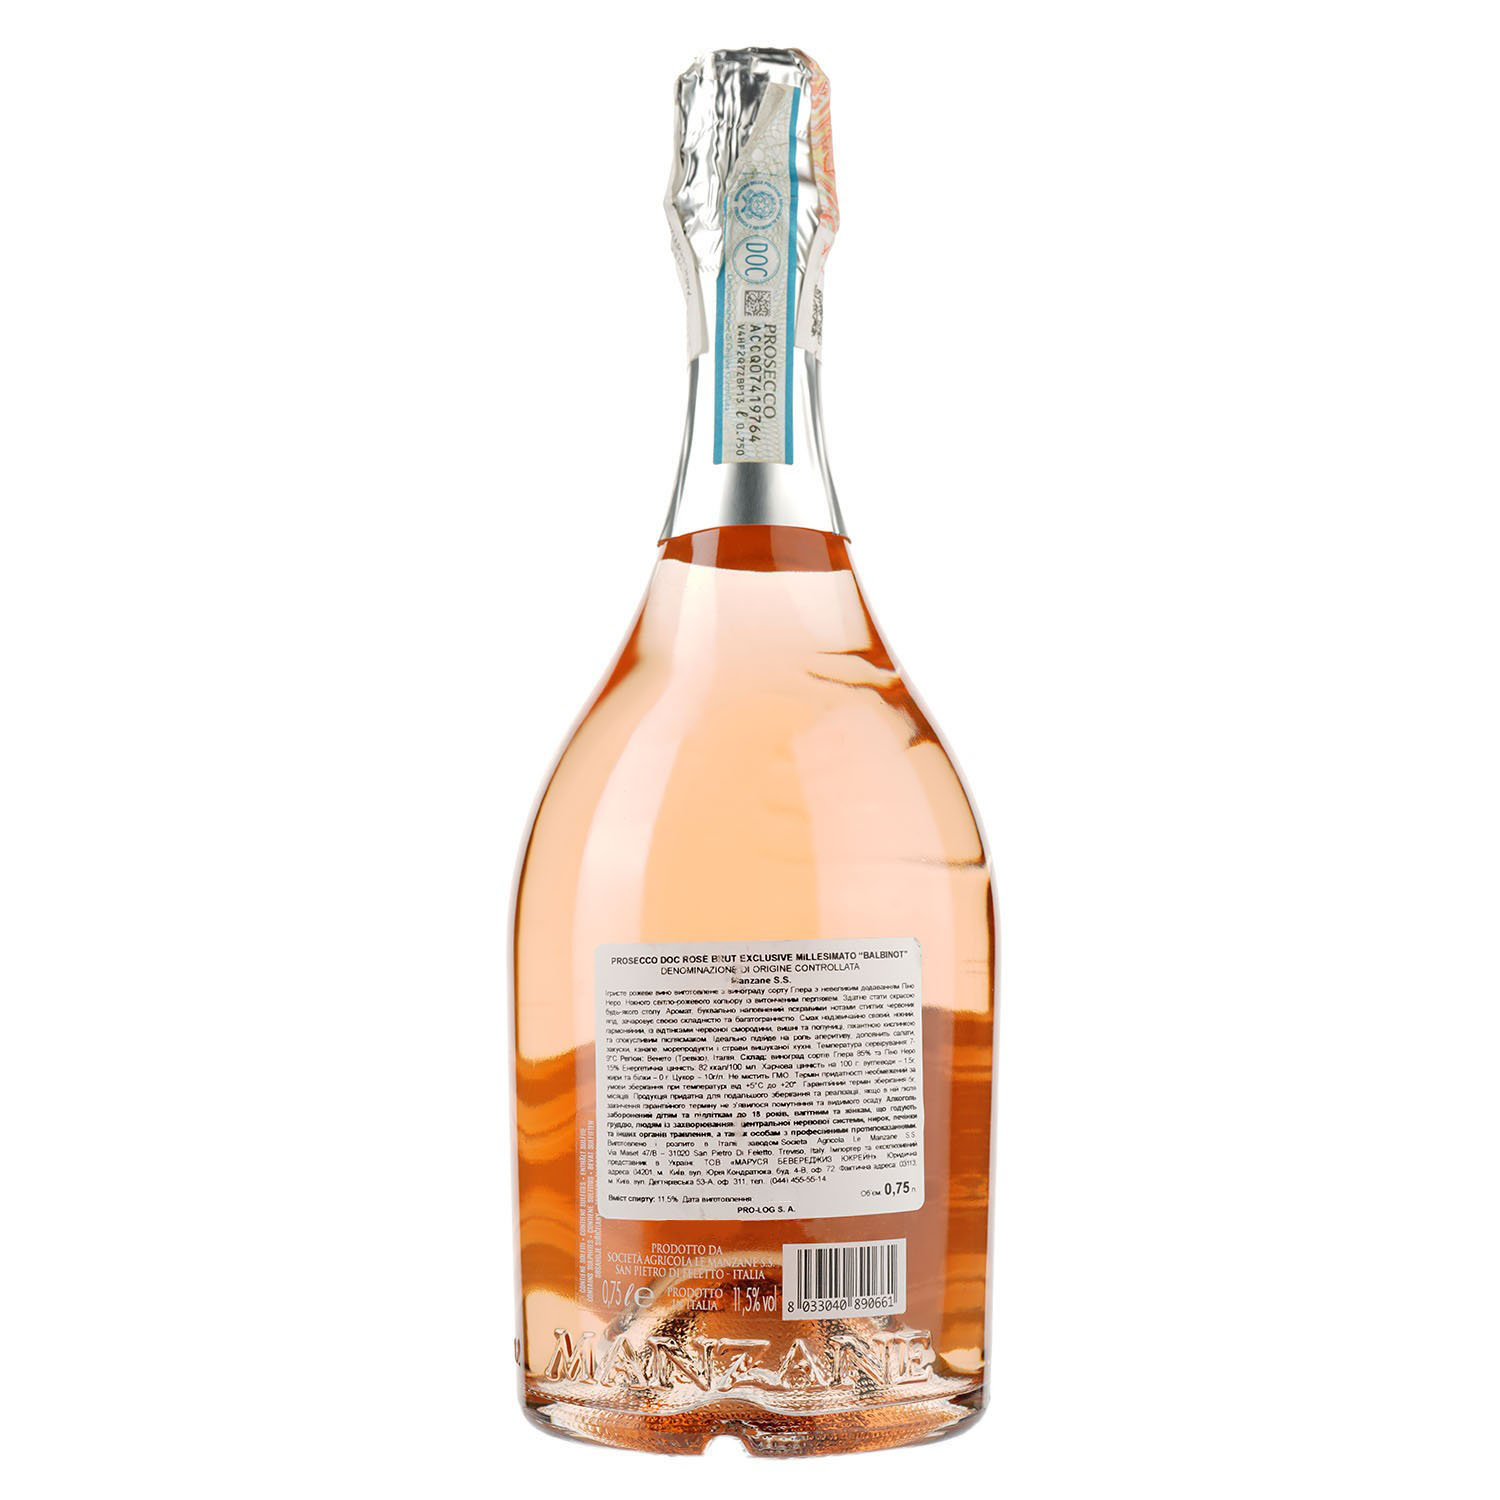 Игристое вино Le Manzane Prosecco Balbinot rose brut, розовое, брют, 11,5%, 0,75 л - фото 2